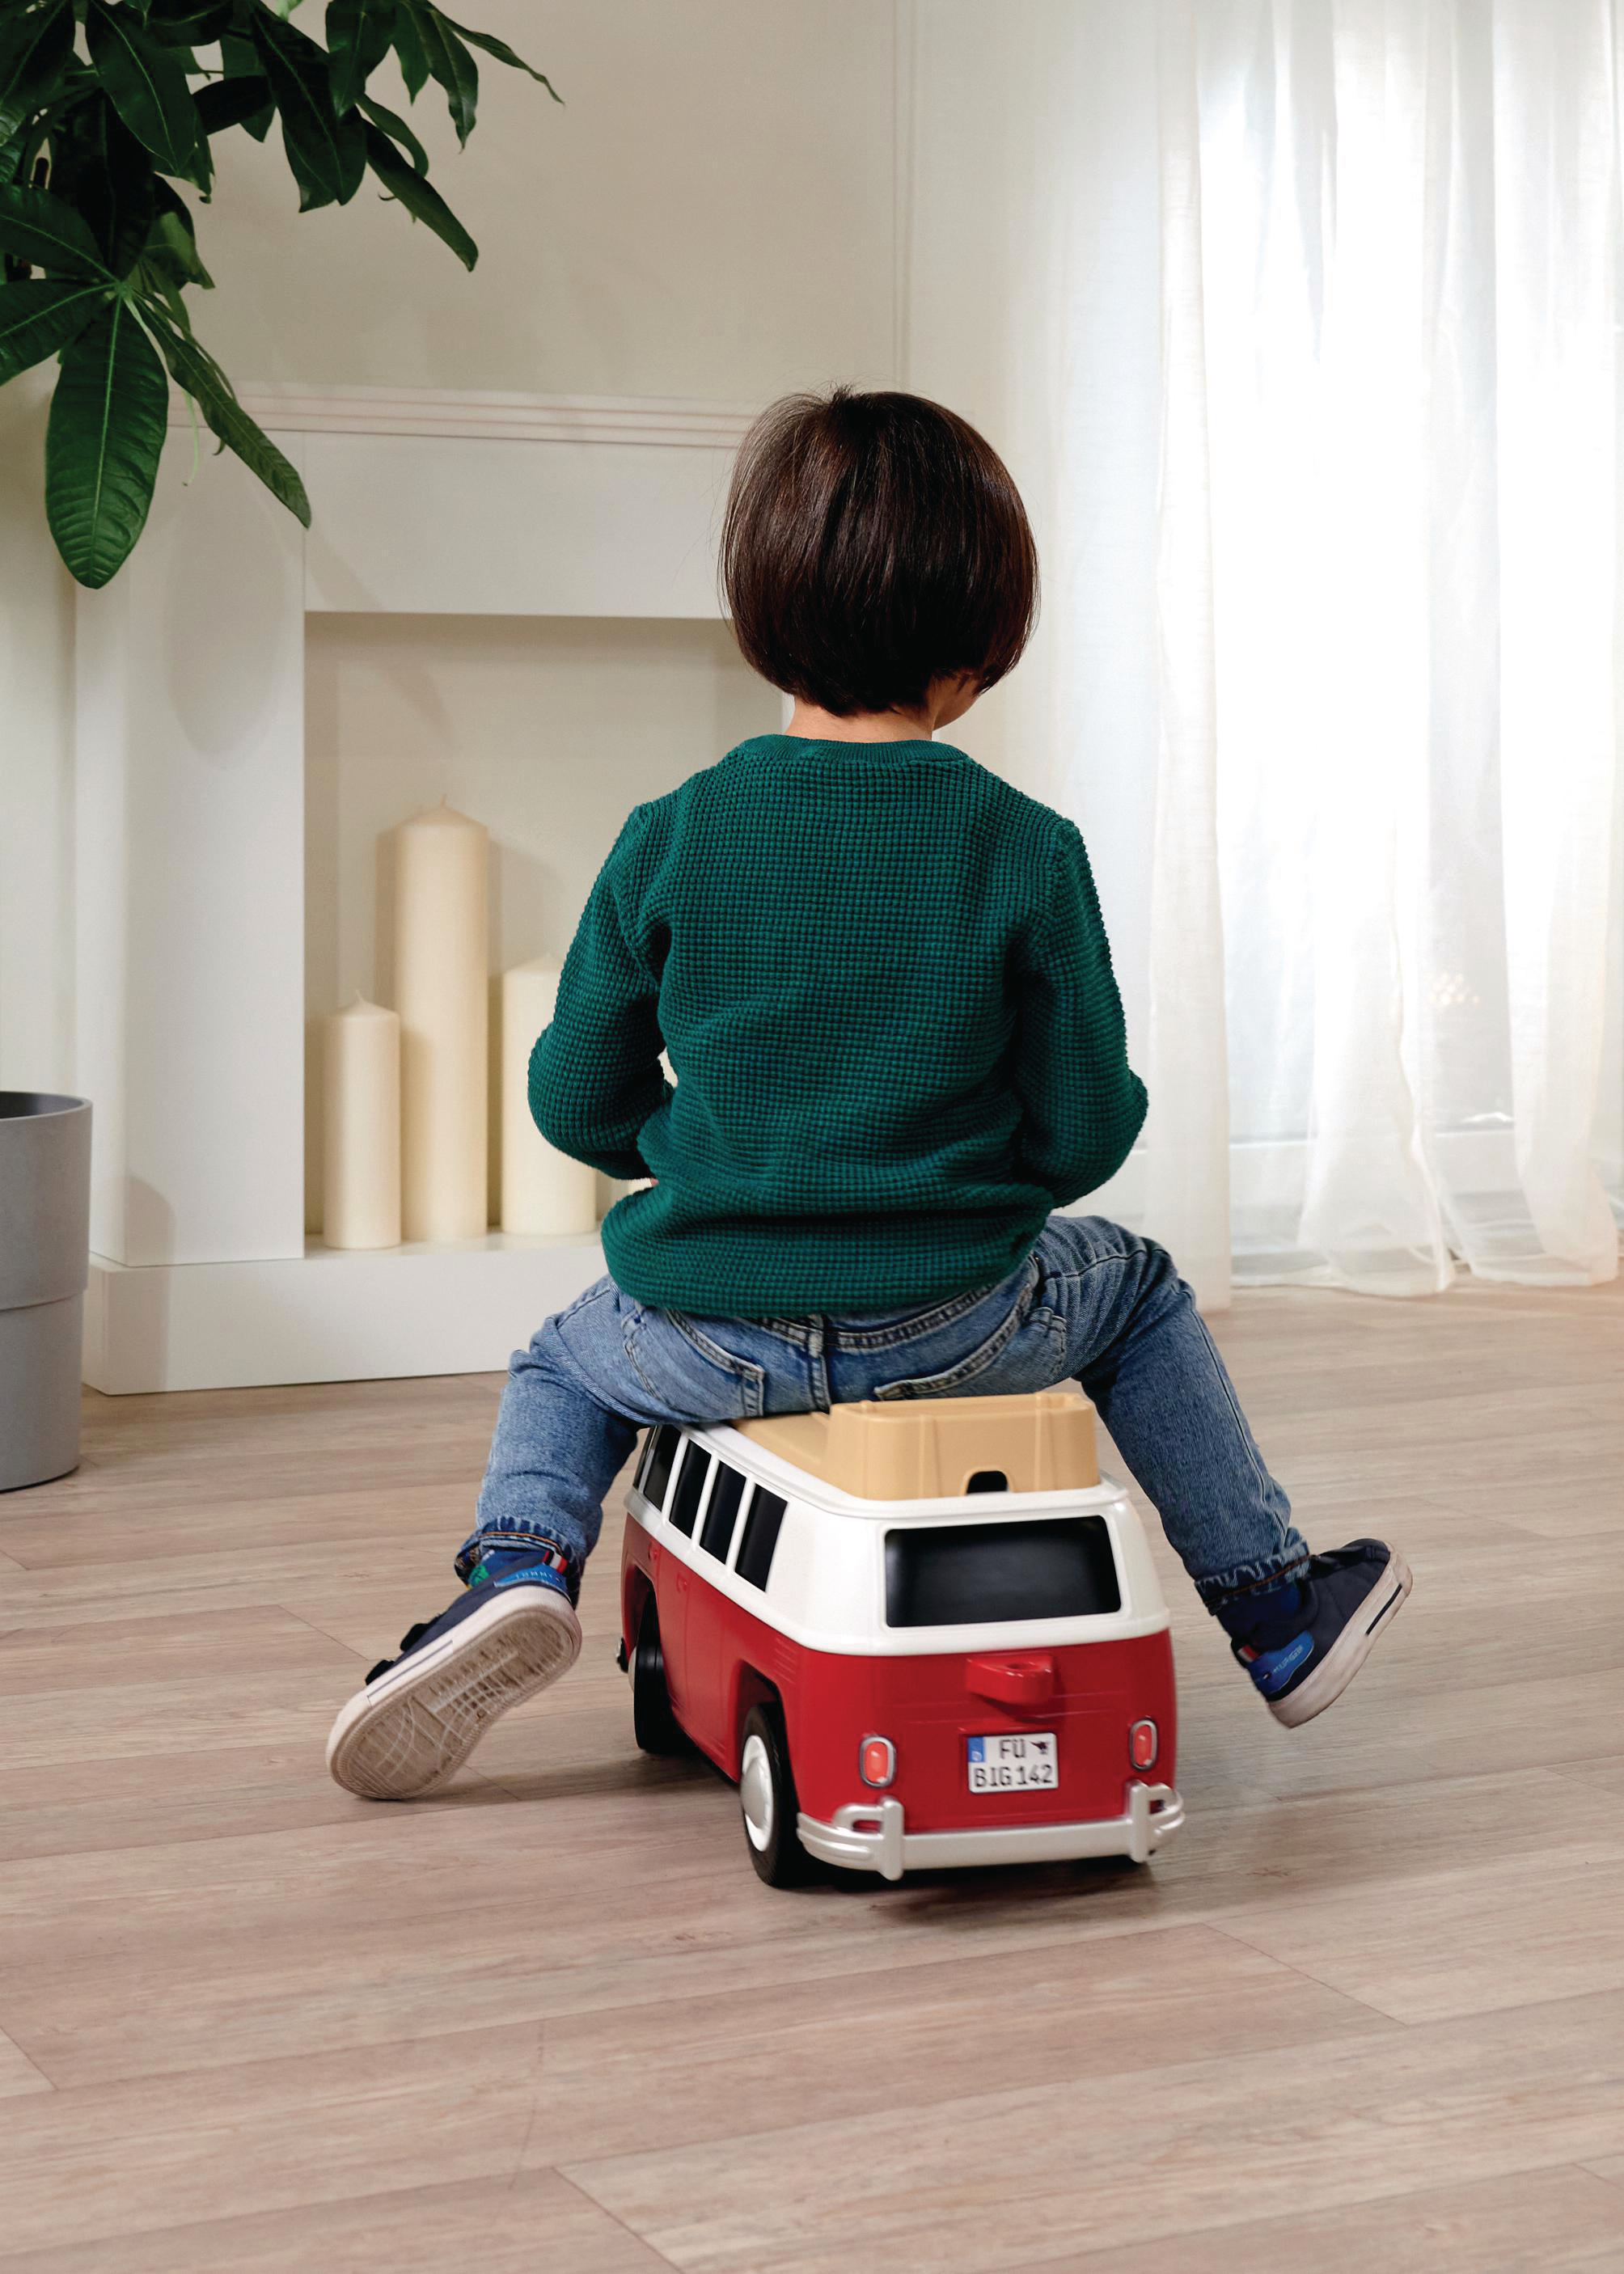 BIG Baby VW T1 Kinderrutscherauto Rot/Weiß